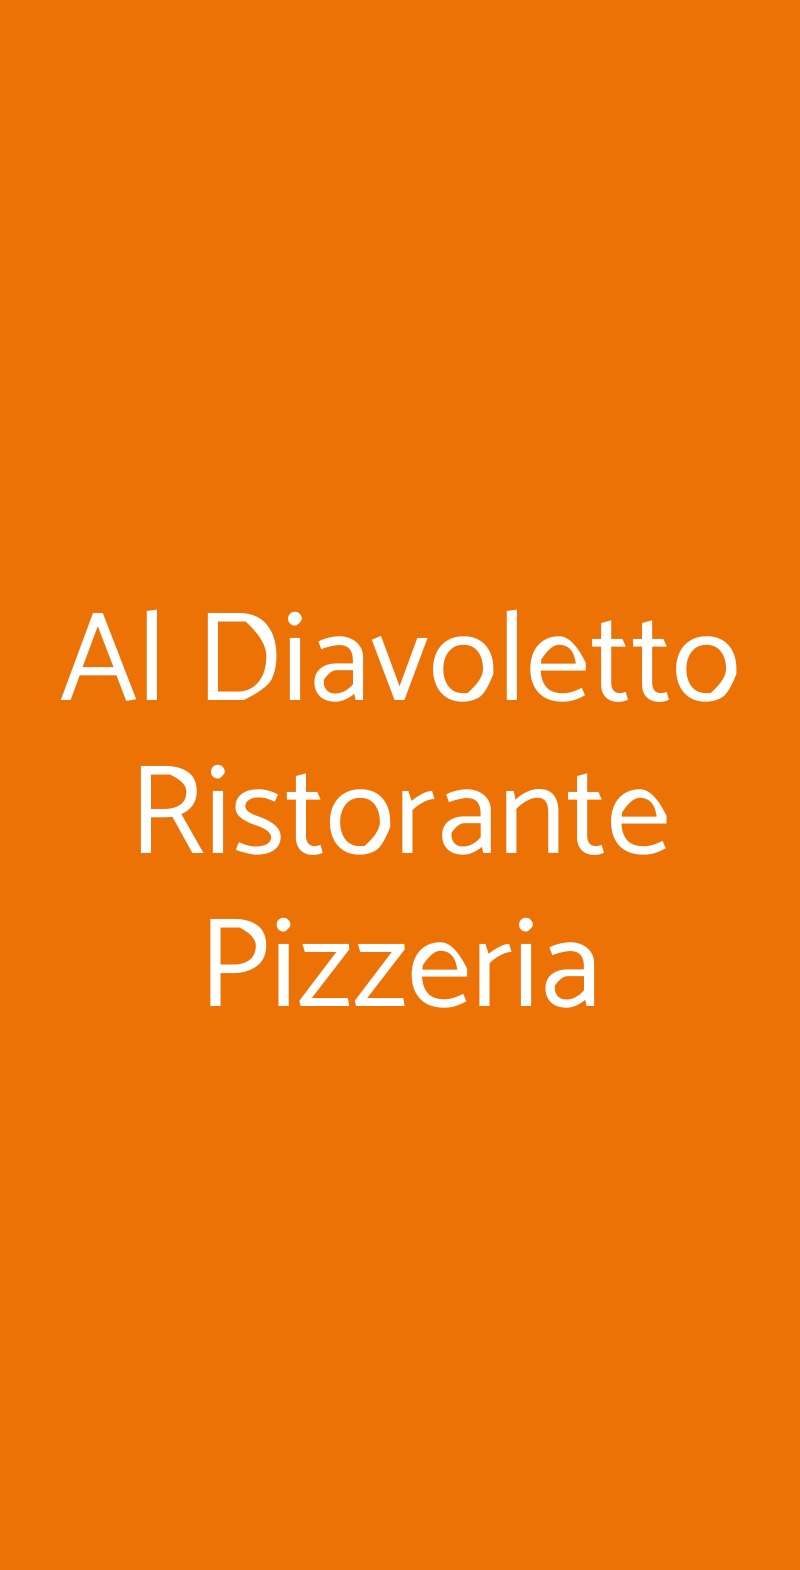 Al Diavoletto Ristorante Pizzeria Carovigno menù 1 pagina